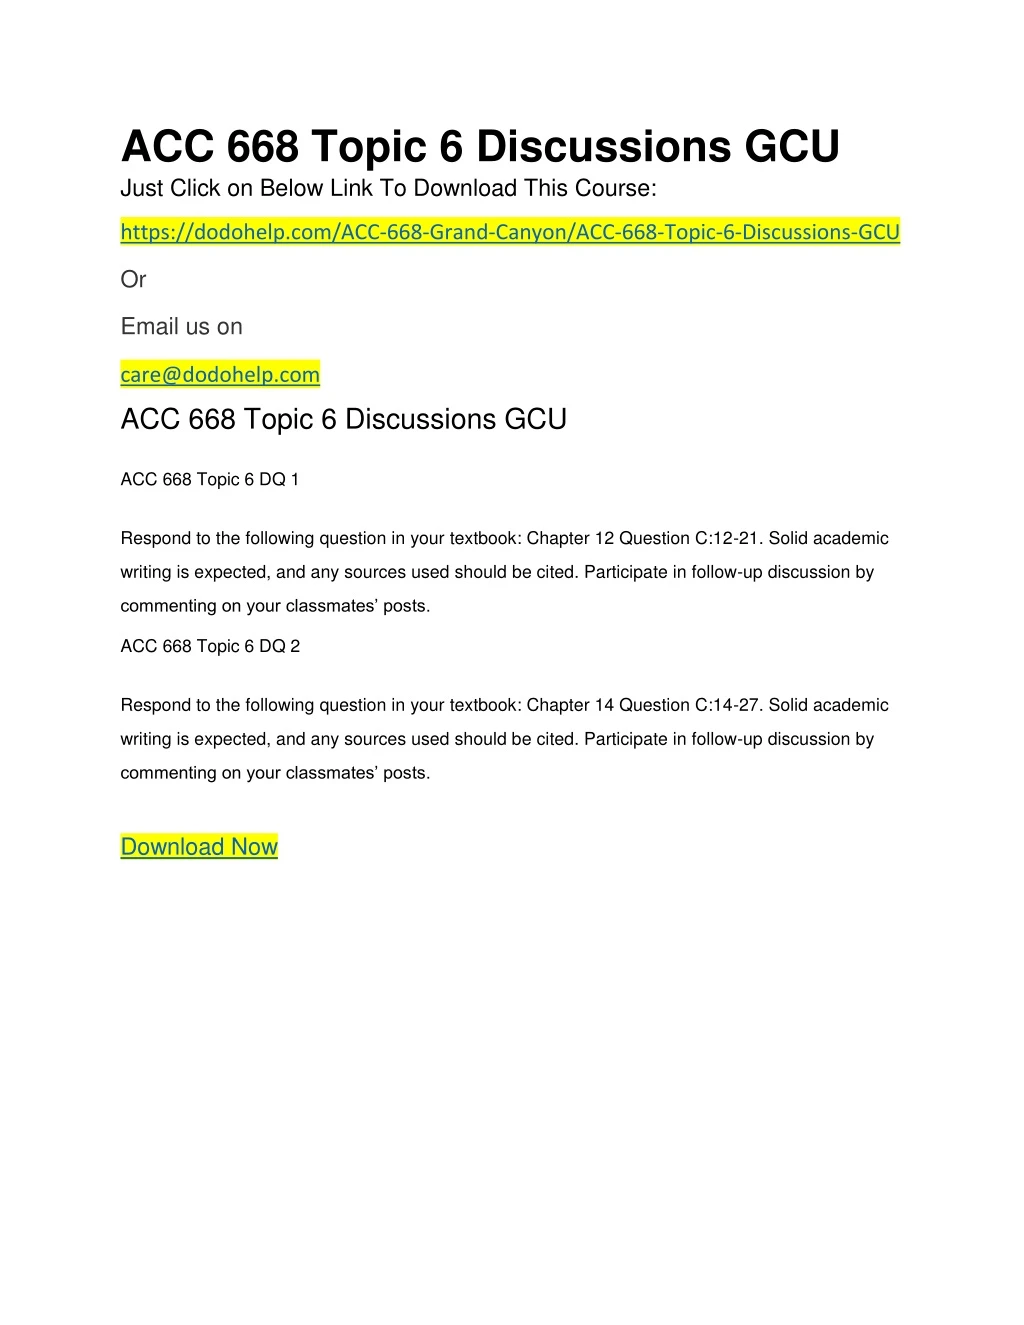 acc 668 topic 6 discussions gcu just click